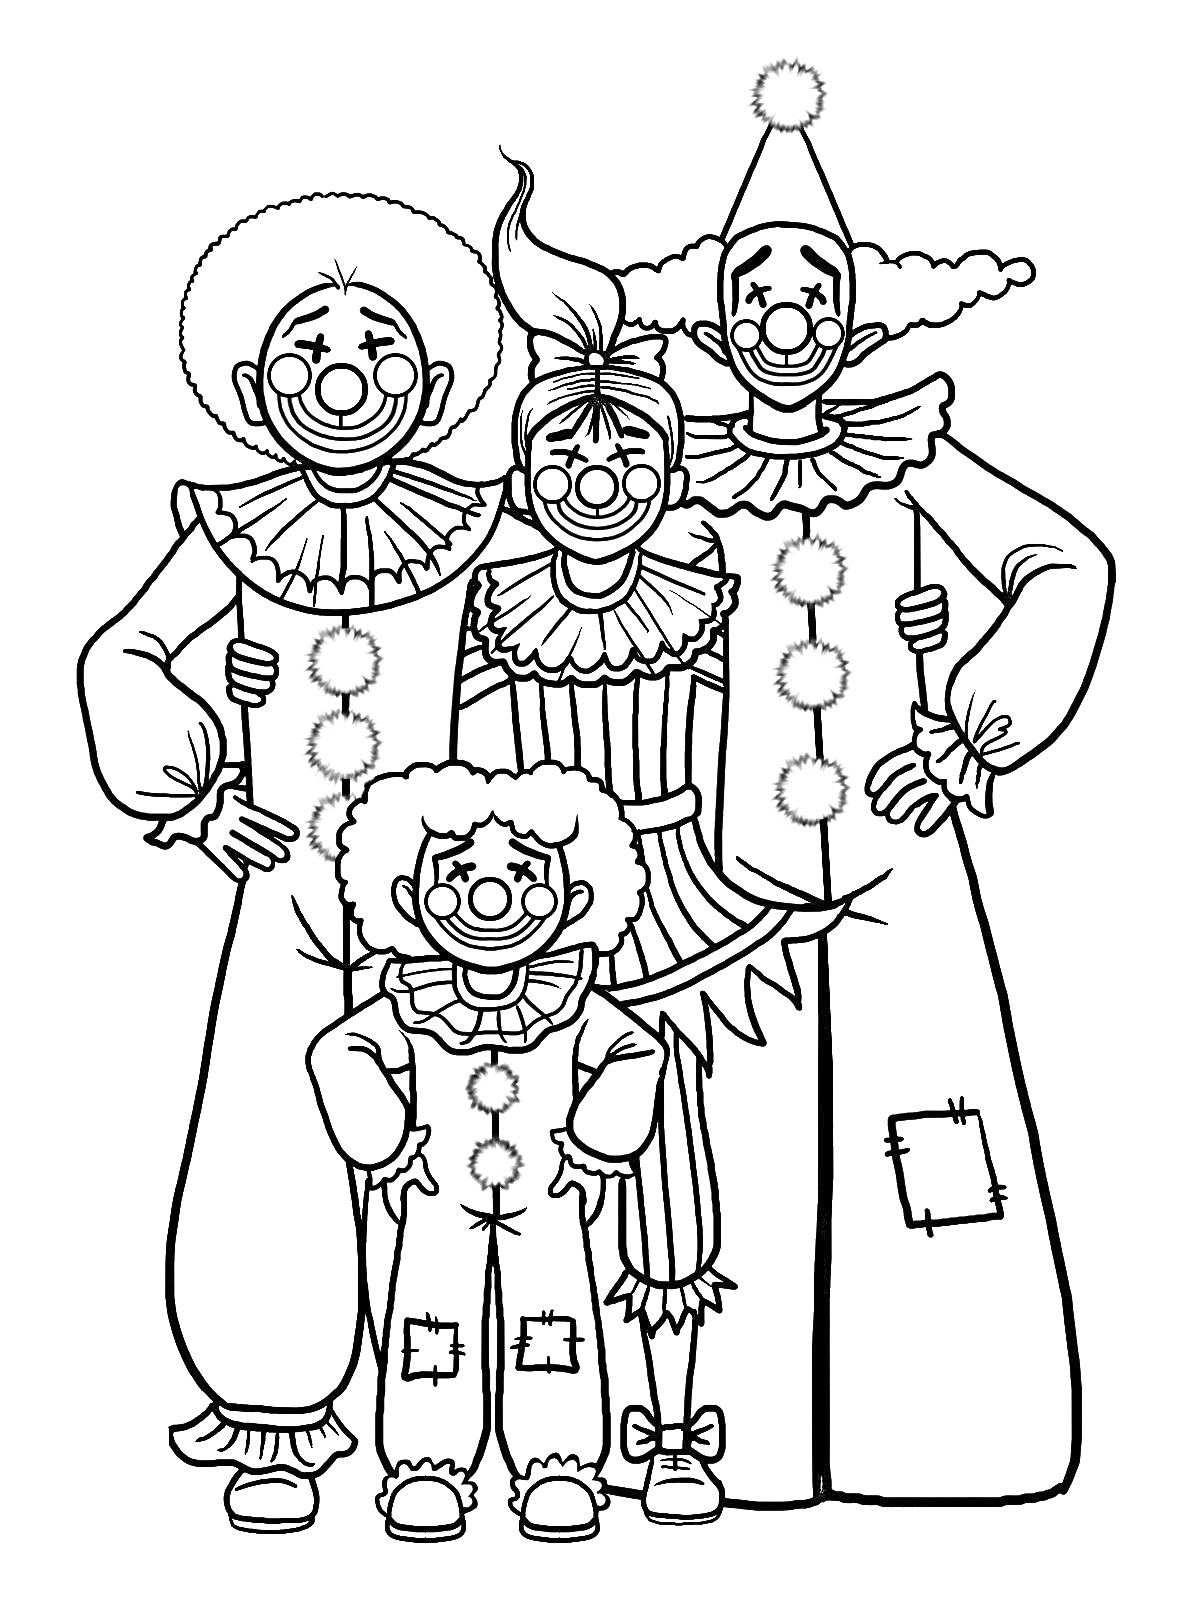 Раскраска Семья клоунов: четыре клоуна в костюмах с большими пуговицами, париками и гримом, один с конусообразной шляпой, один с лохмотьями на брюках.